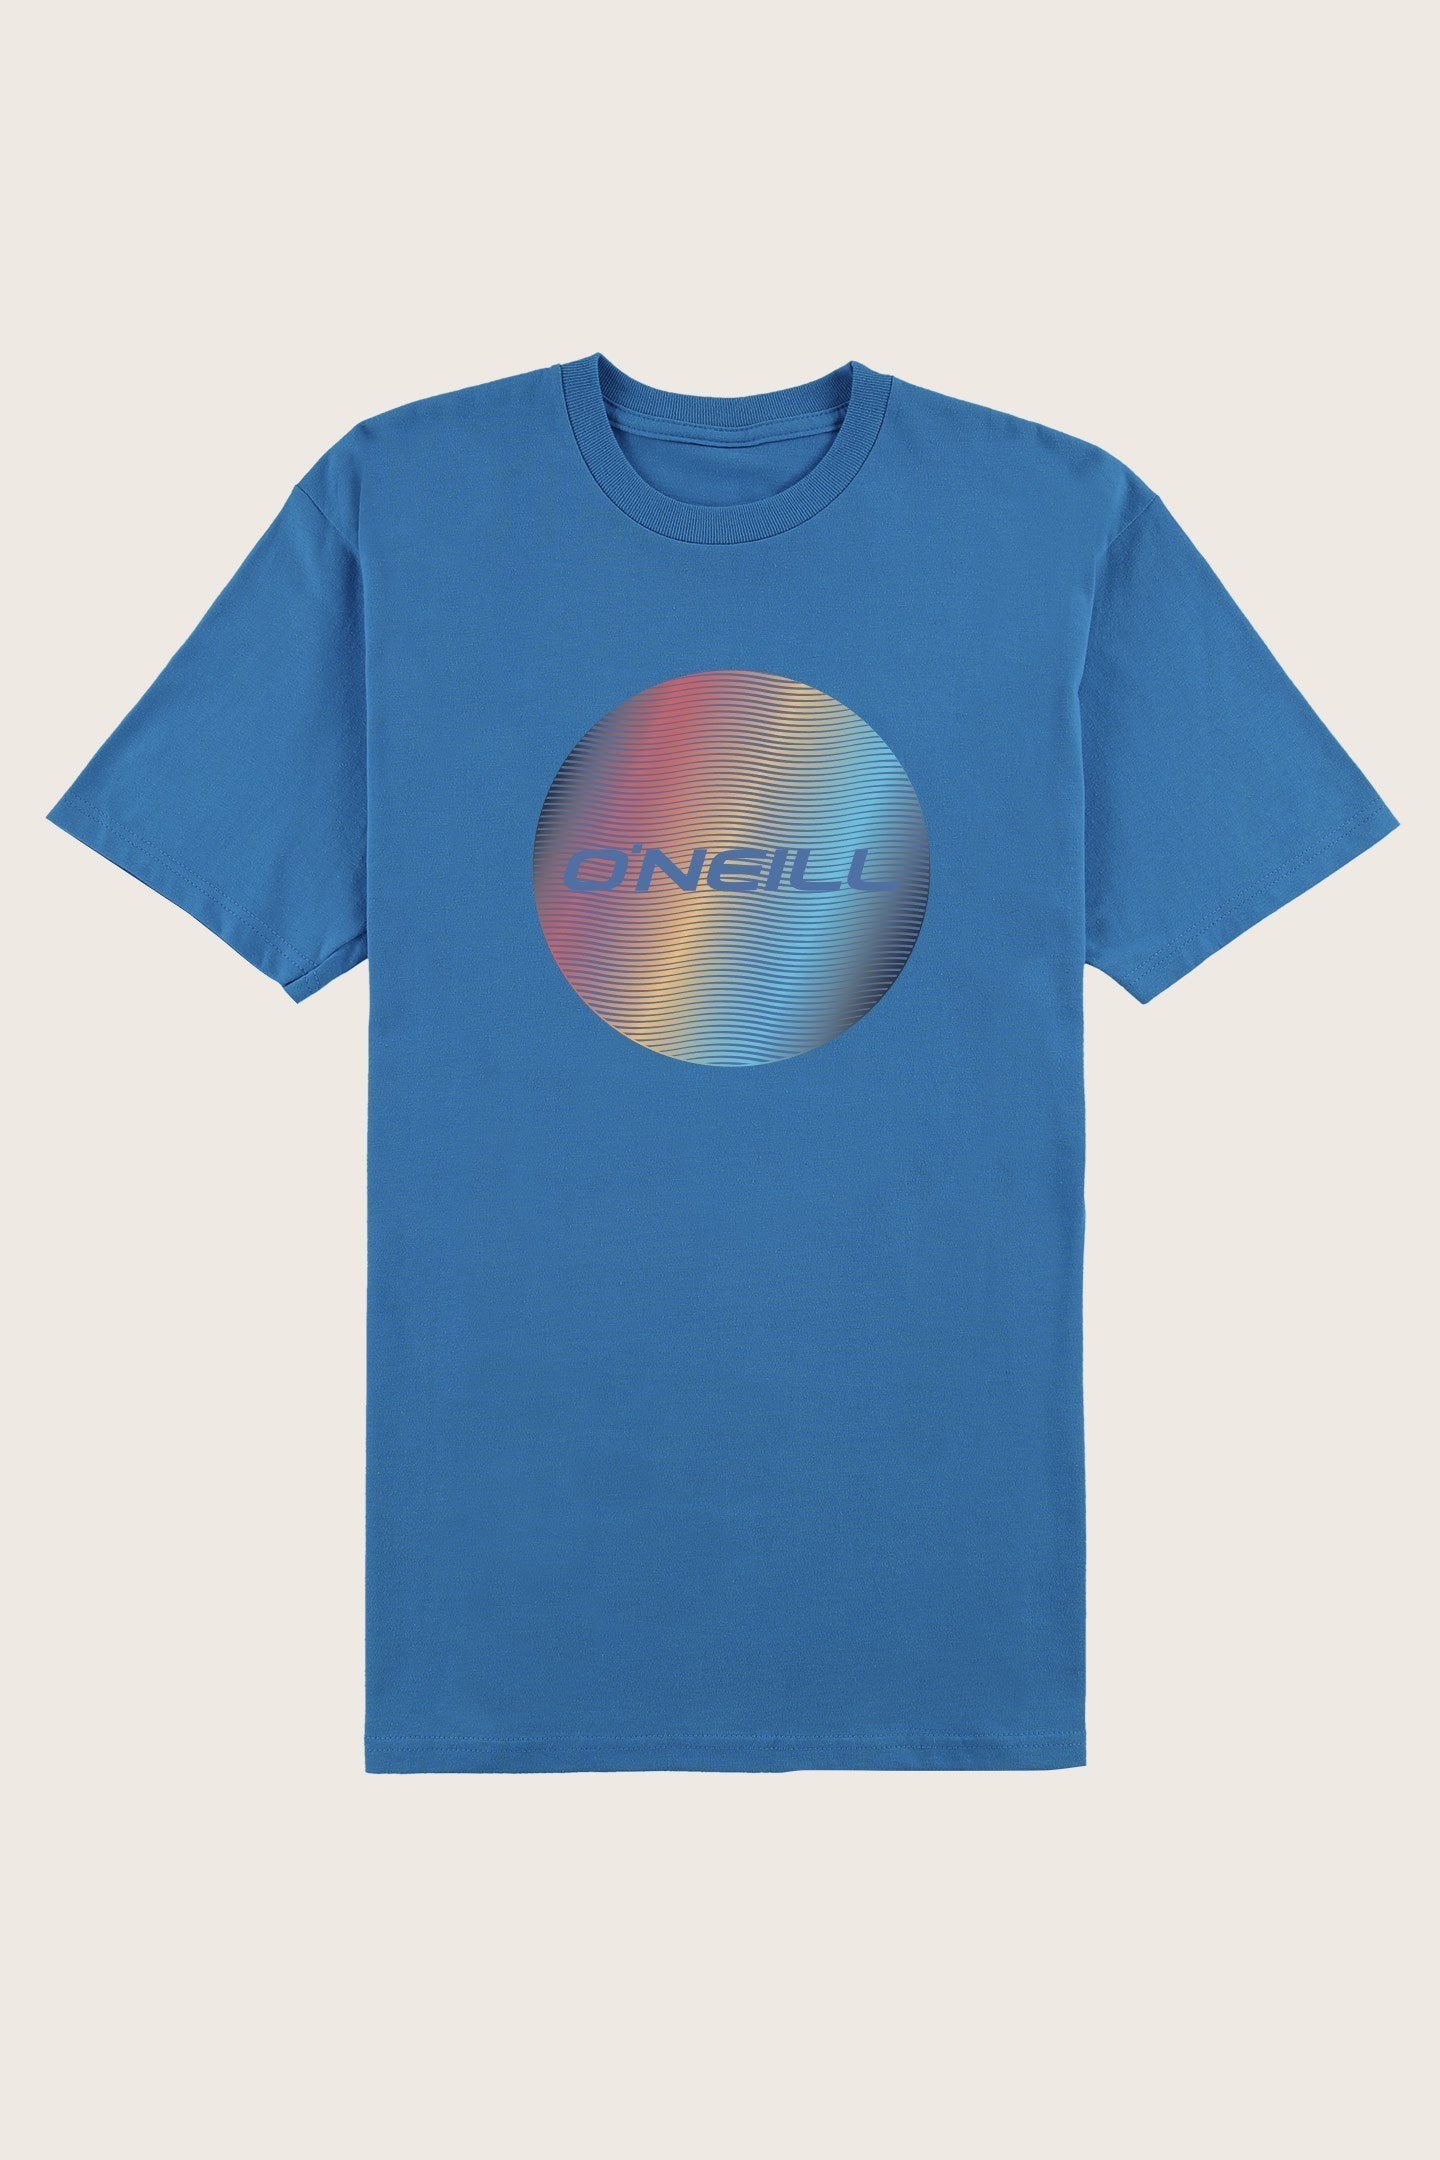 Oneill Squiggy Mens Tshirt 2019